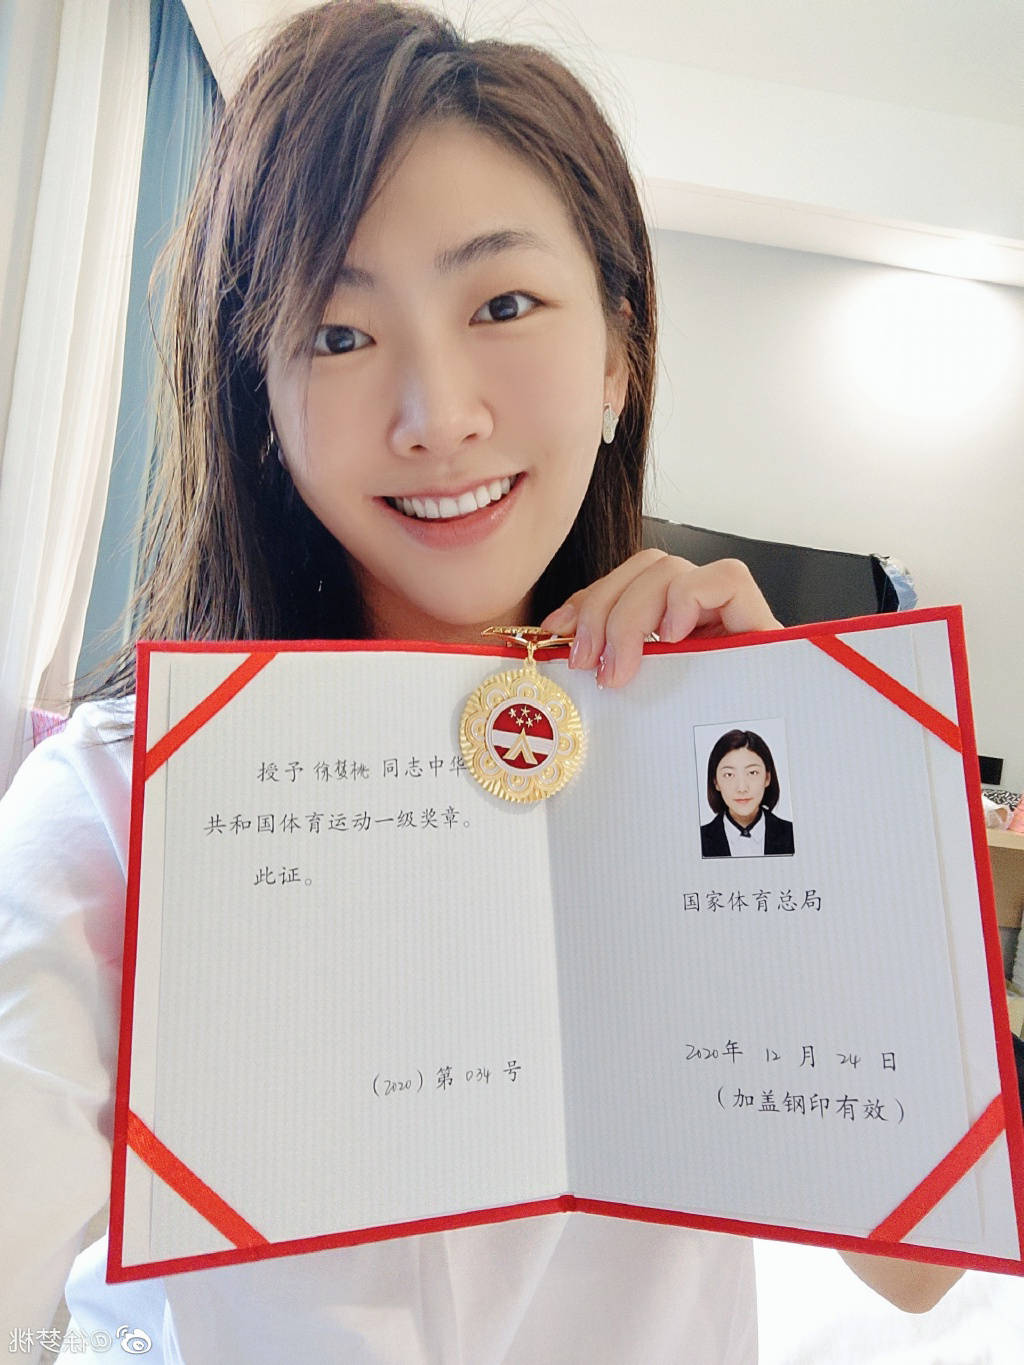 徐梦桃在社交媒体上晒出自己被授予的体育运动员一级奖章和证书